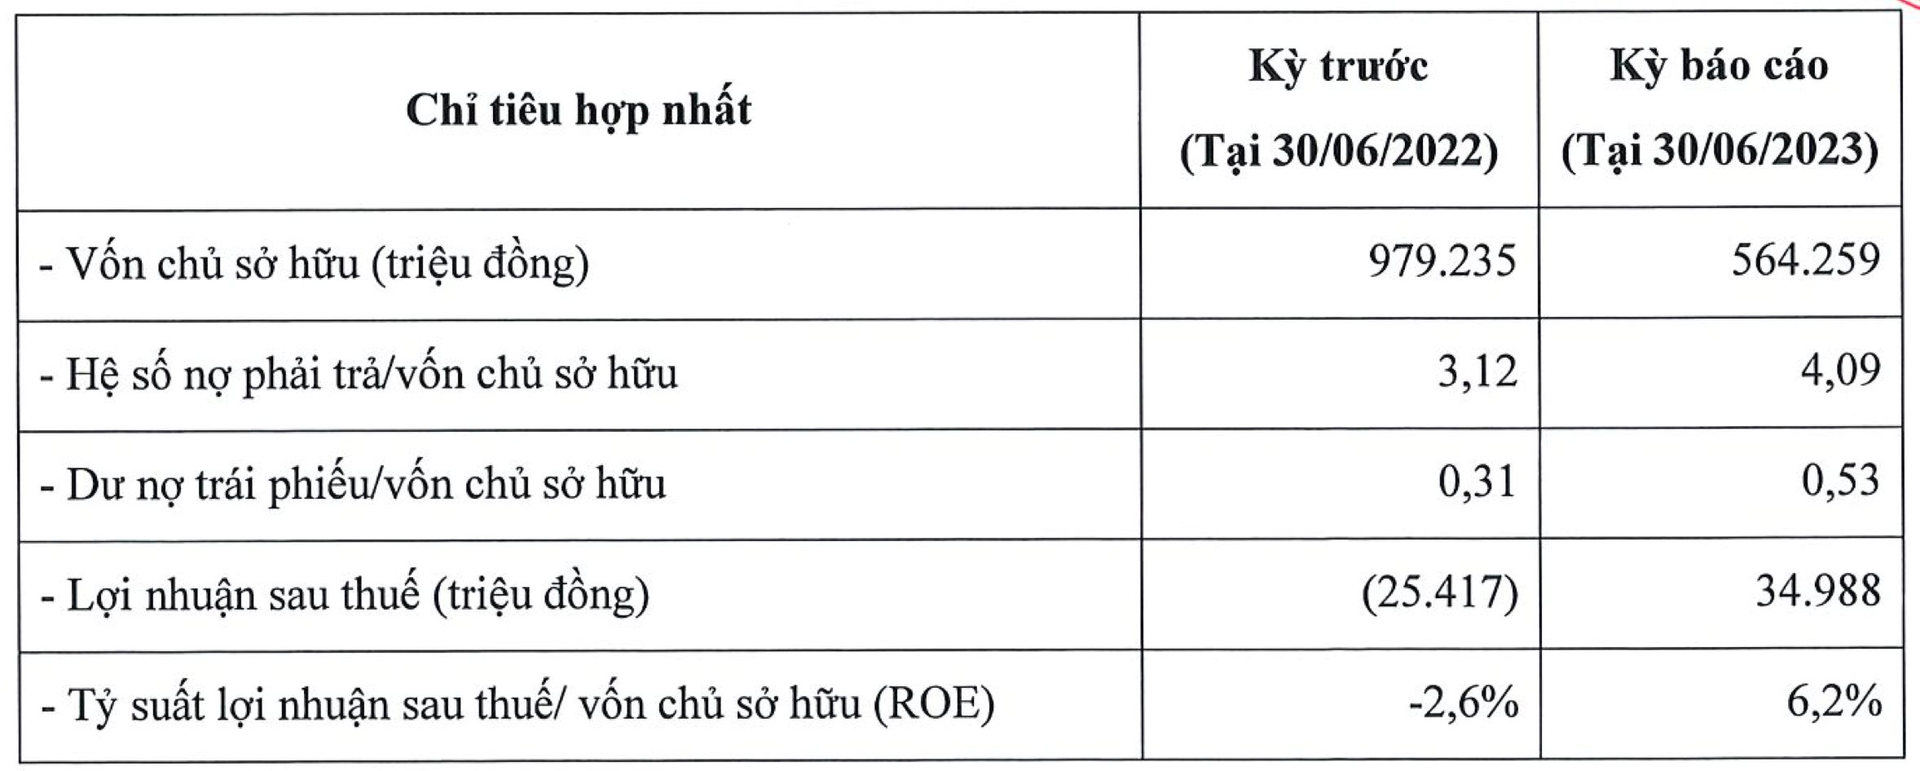 Hãng điều hoà bình dân Casper Việt Nam bất ngờ có lãi trở lại với 35 tỷ đồng, nợ giảm 30% còn 2.300 tỷ đồng - Ảnh 1.